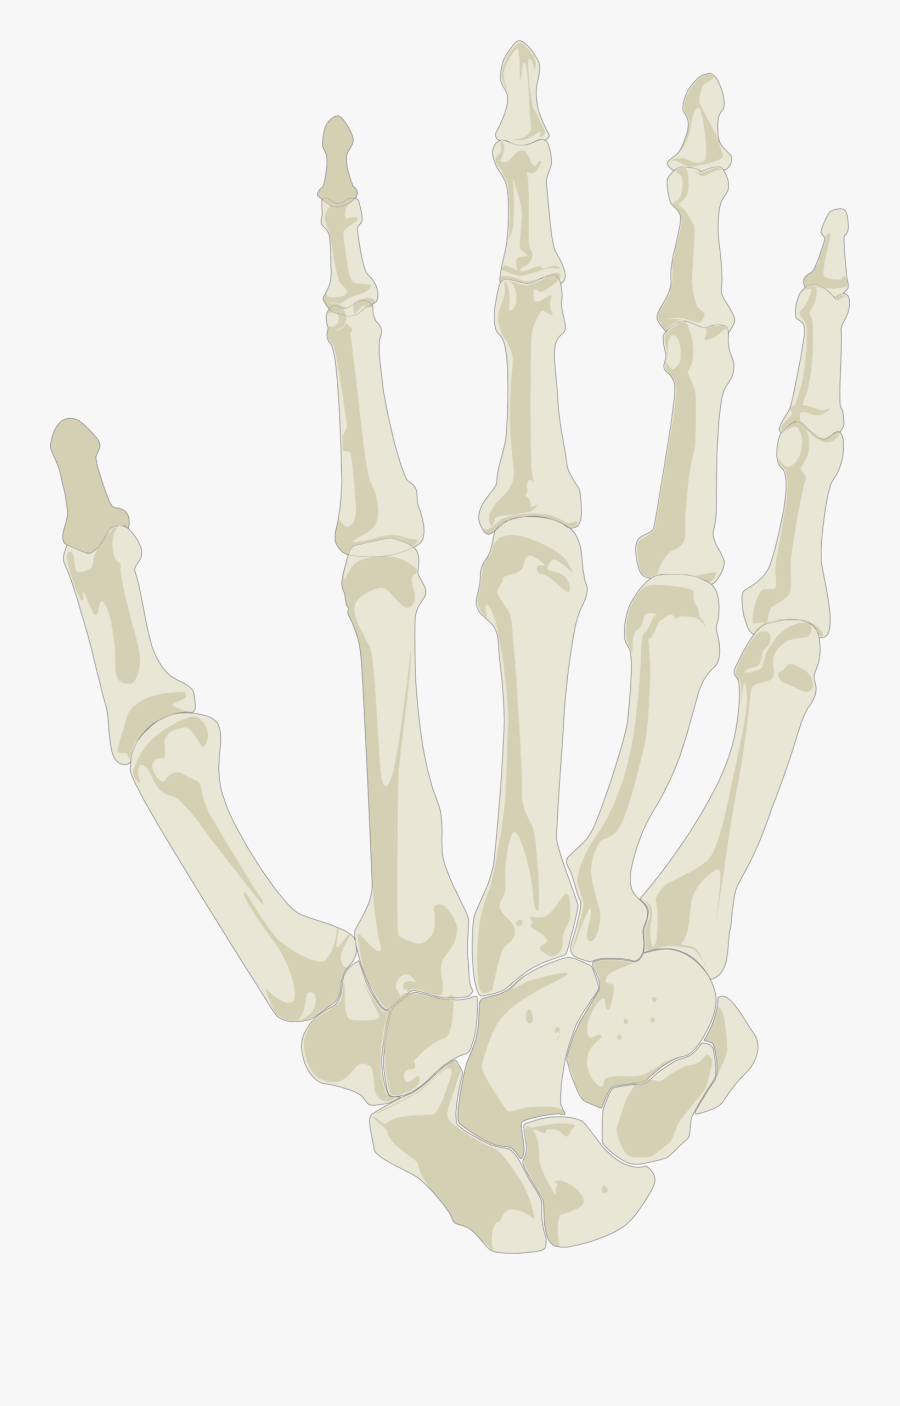 Hand Skeleton - Skeleton Hands Holding Png, Transparent Clipart